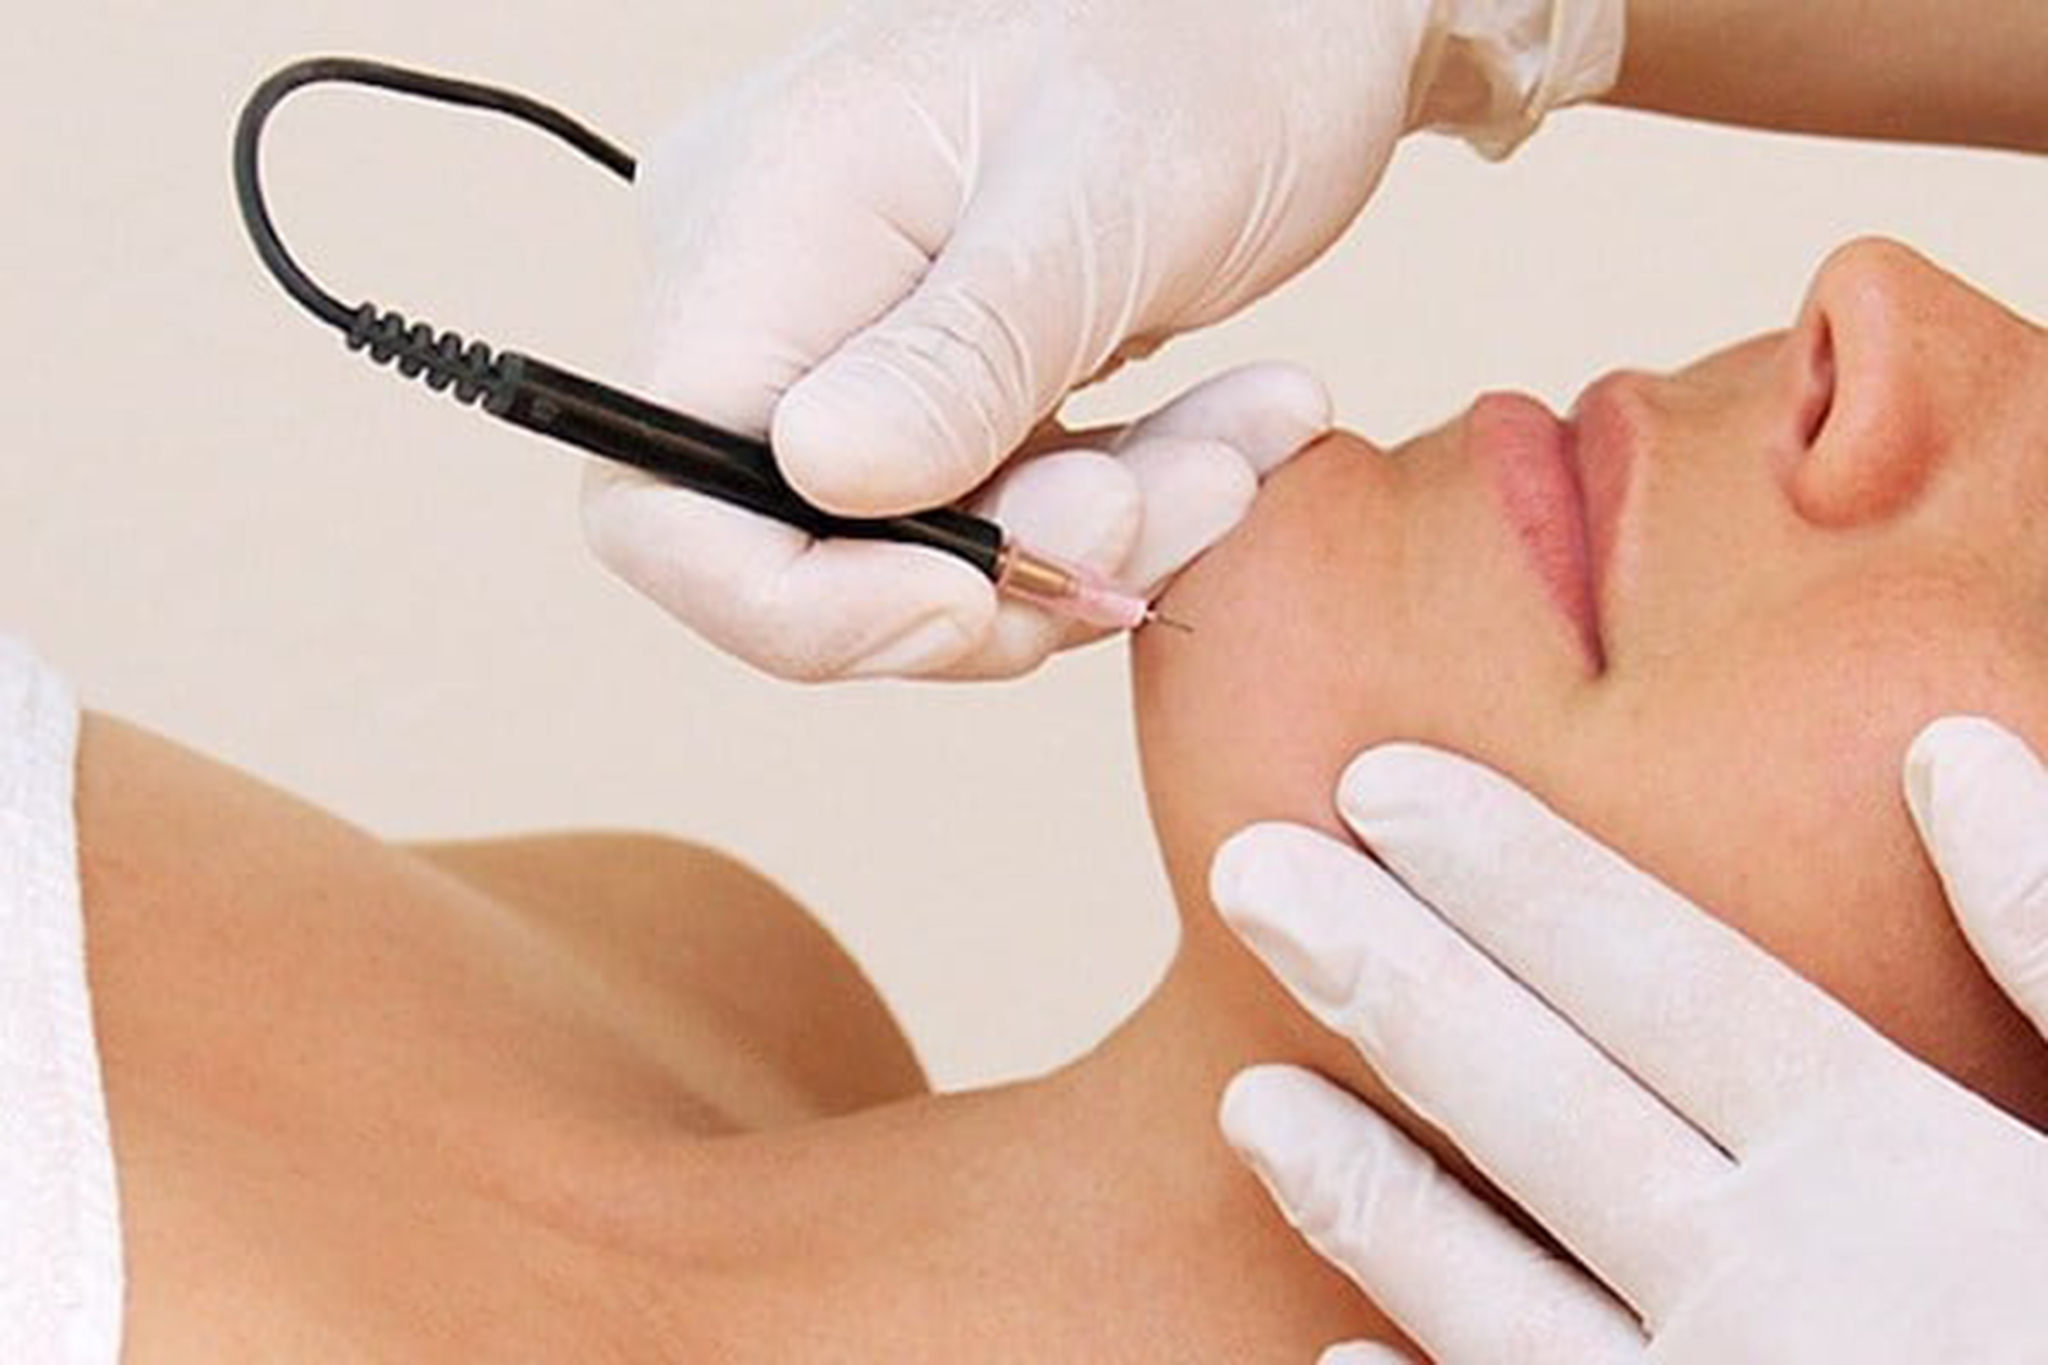 Le Plaisir electrolysis skin treatment service in Kaiapoi, New Zealand